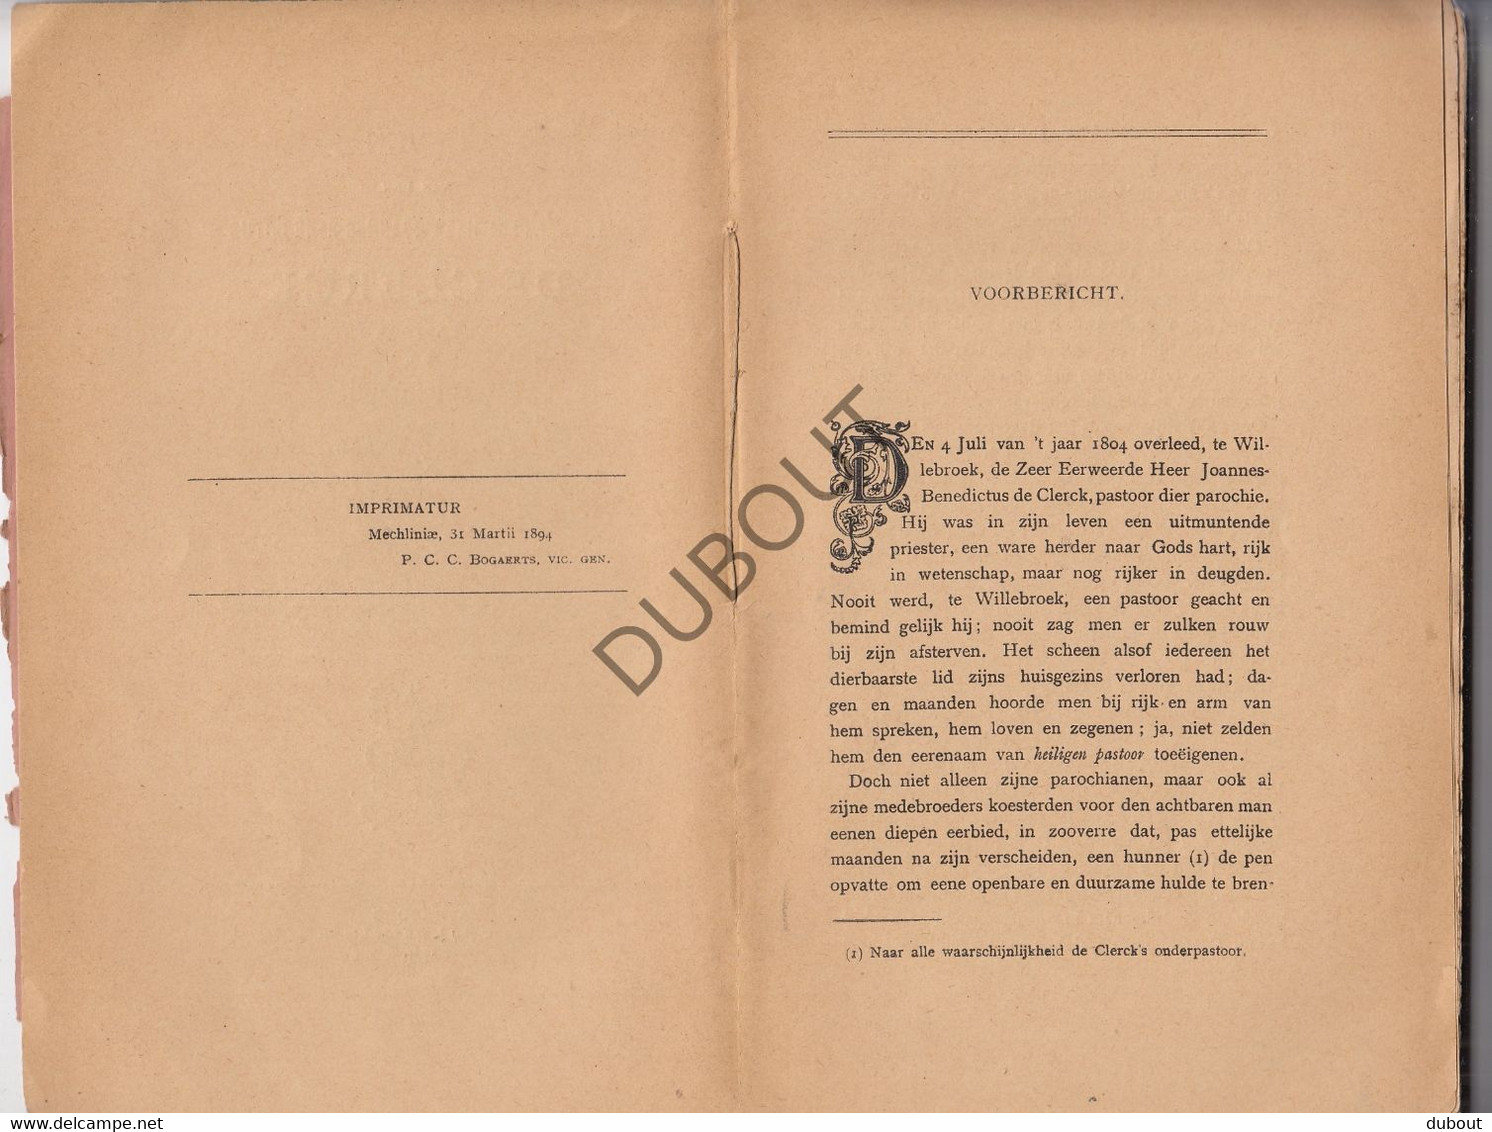 WILLEBROEK - Leven Van Eerwaarde Heer J-B De Clerck - A.M.J. Van Meel, Pastoor Van Diest - 1894    (V1200) - Anciens